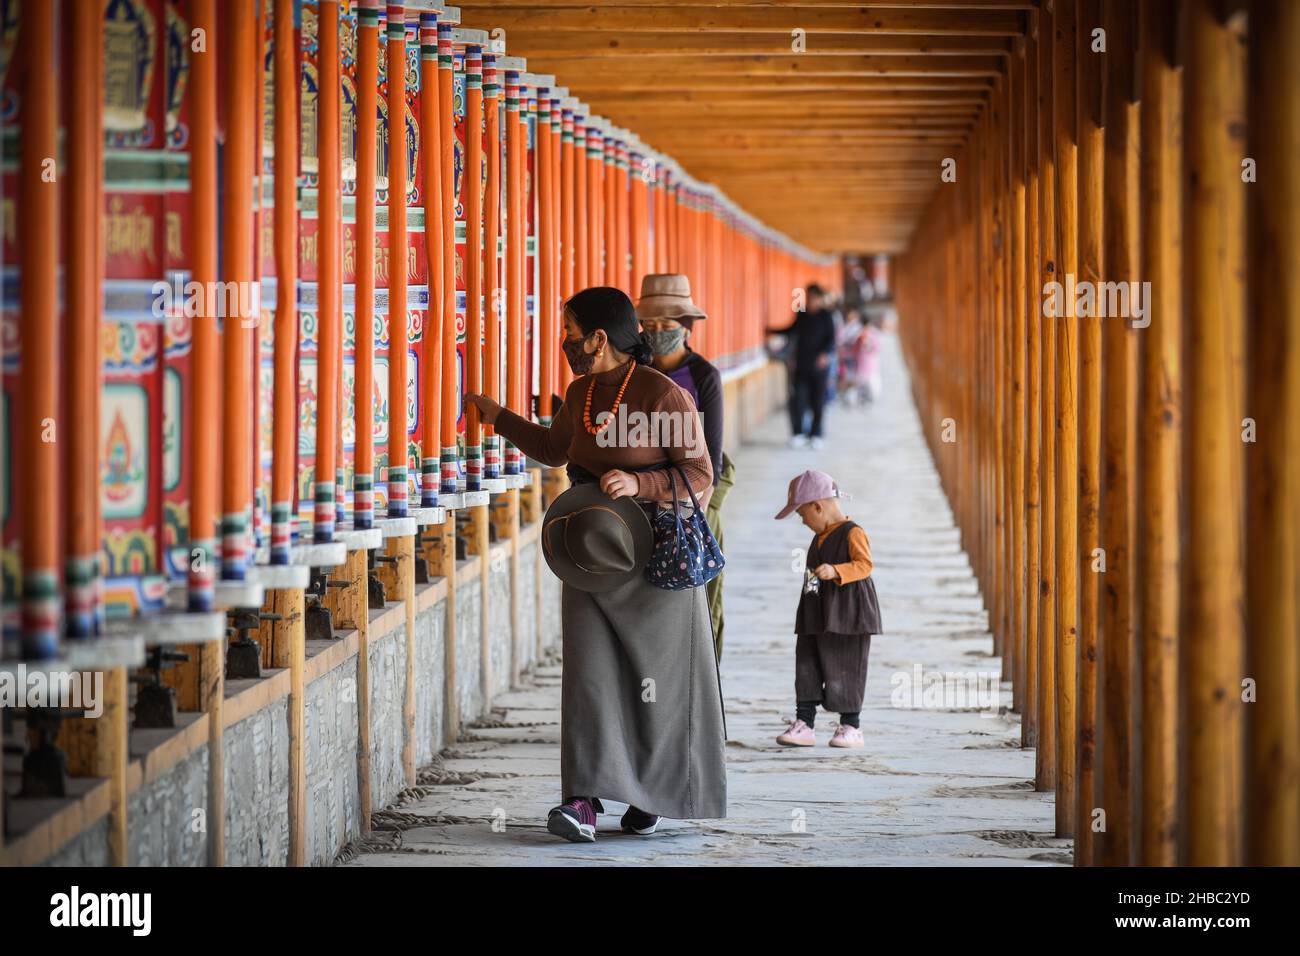 XIAHE, CHINA - 30. Sep 2019: Eine Gruppe religiöser Menschen, die um den Labrang Tempel in Xiahe, China, herumlaufen Stockfoto